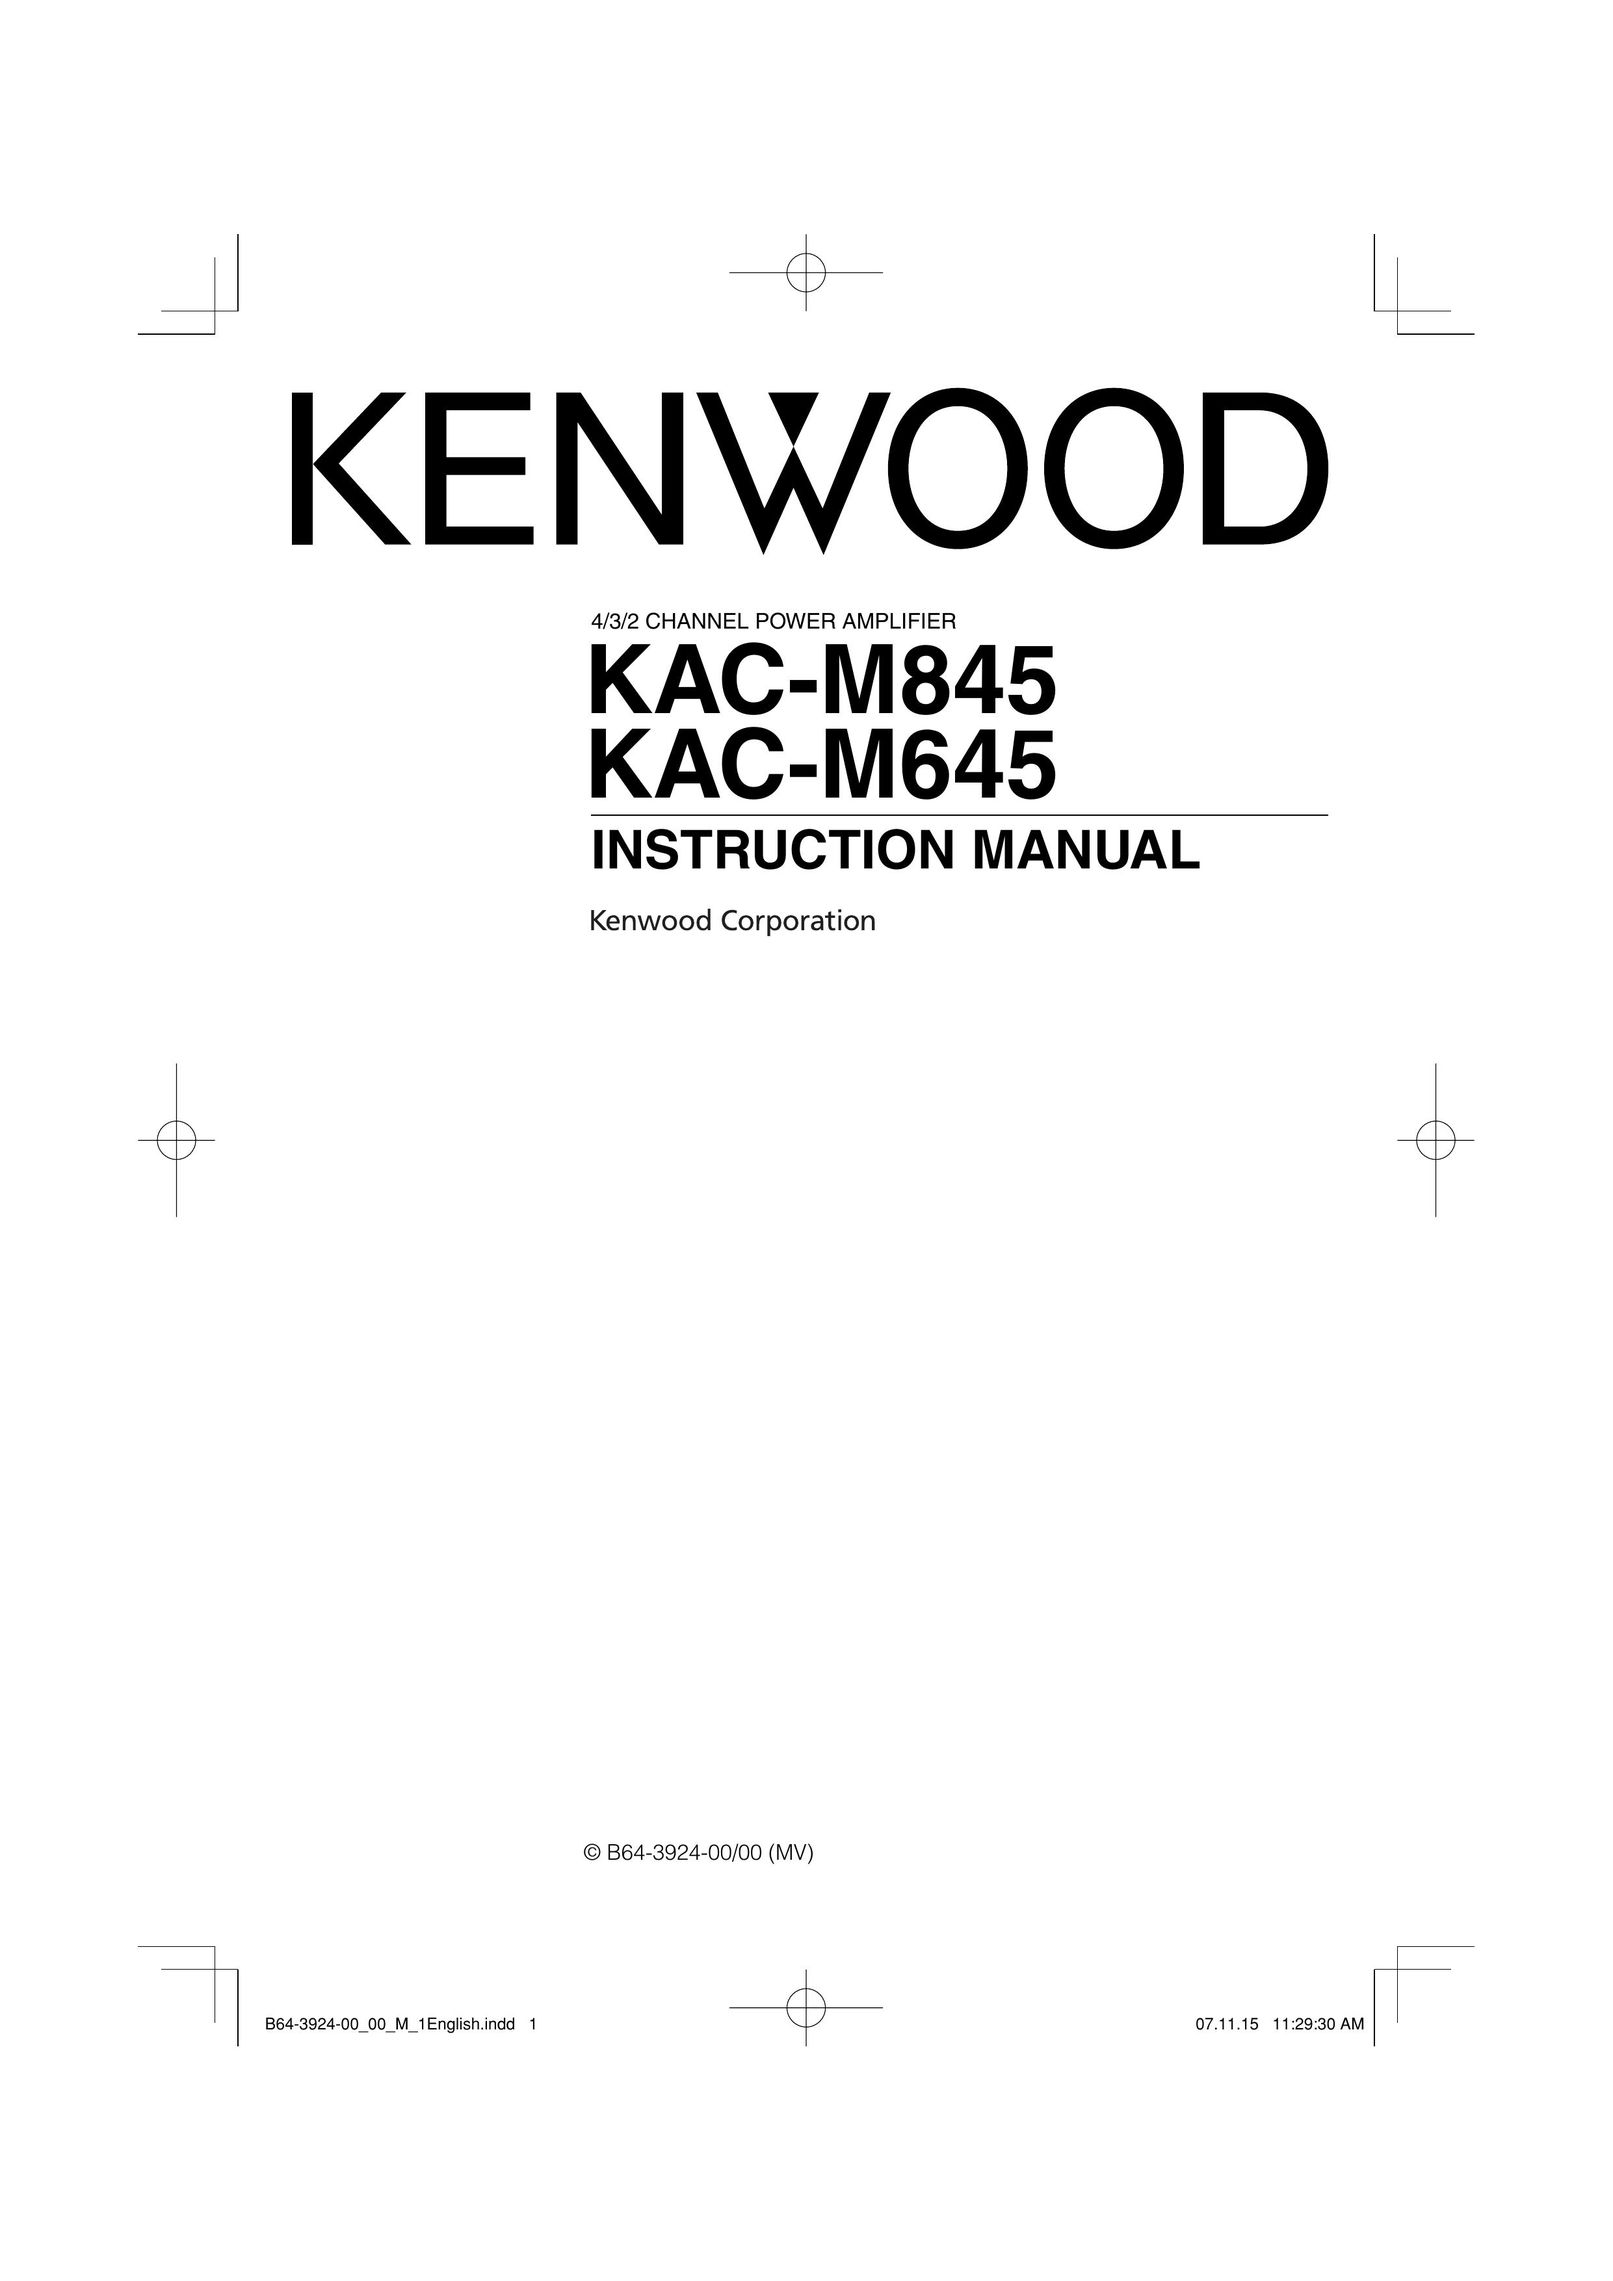 Kenwood KAC-M645 Car Amplifier User Manual